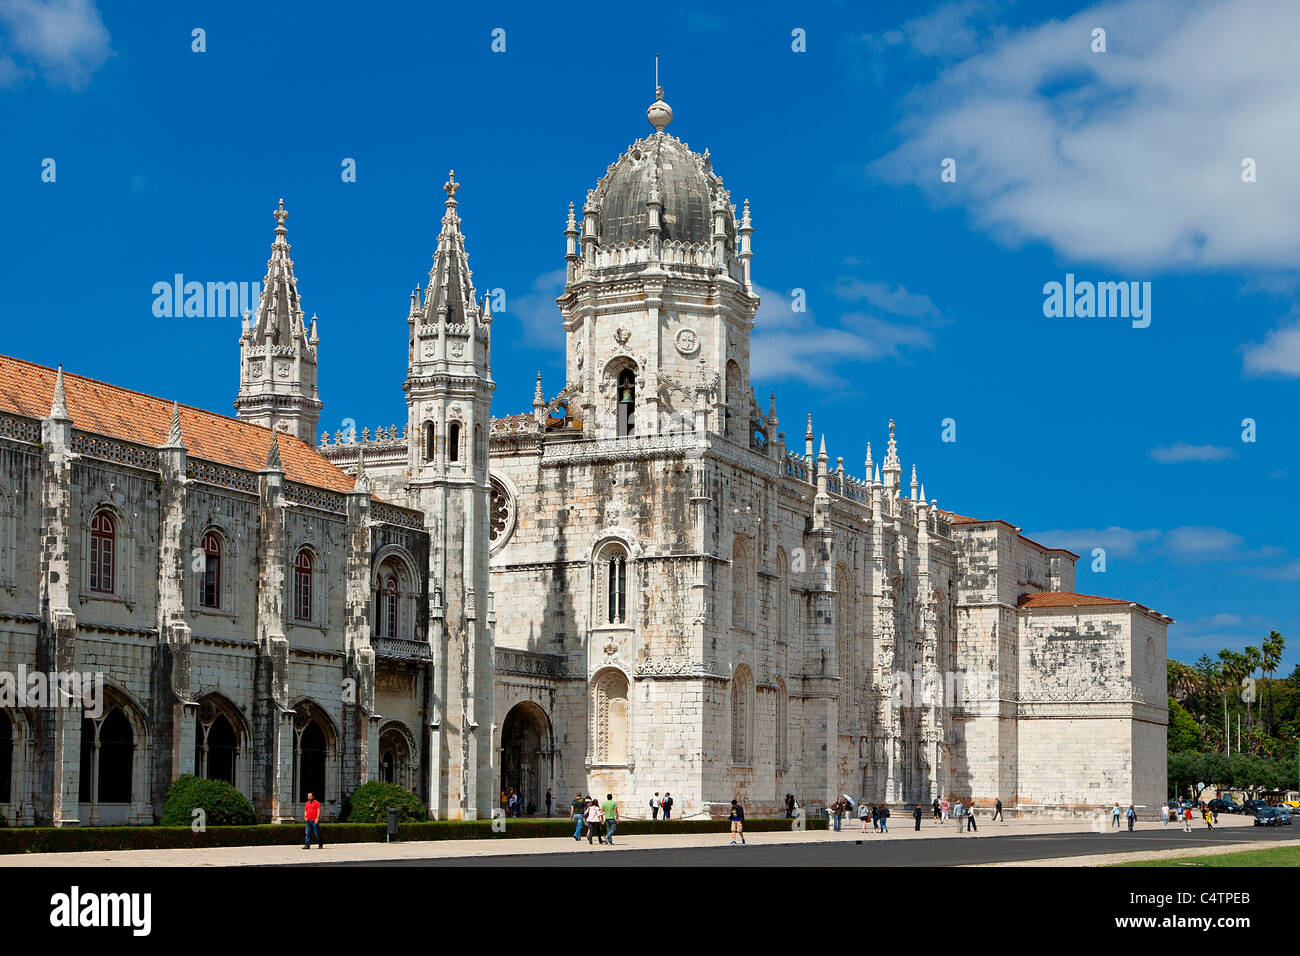 Europe, Portugal, Mosteiro dos Jeronimos in Lisbon Stock Photo